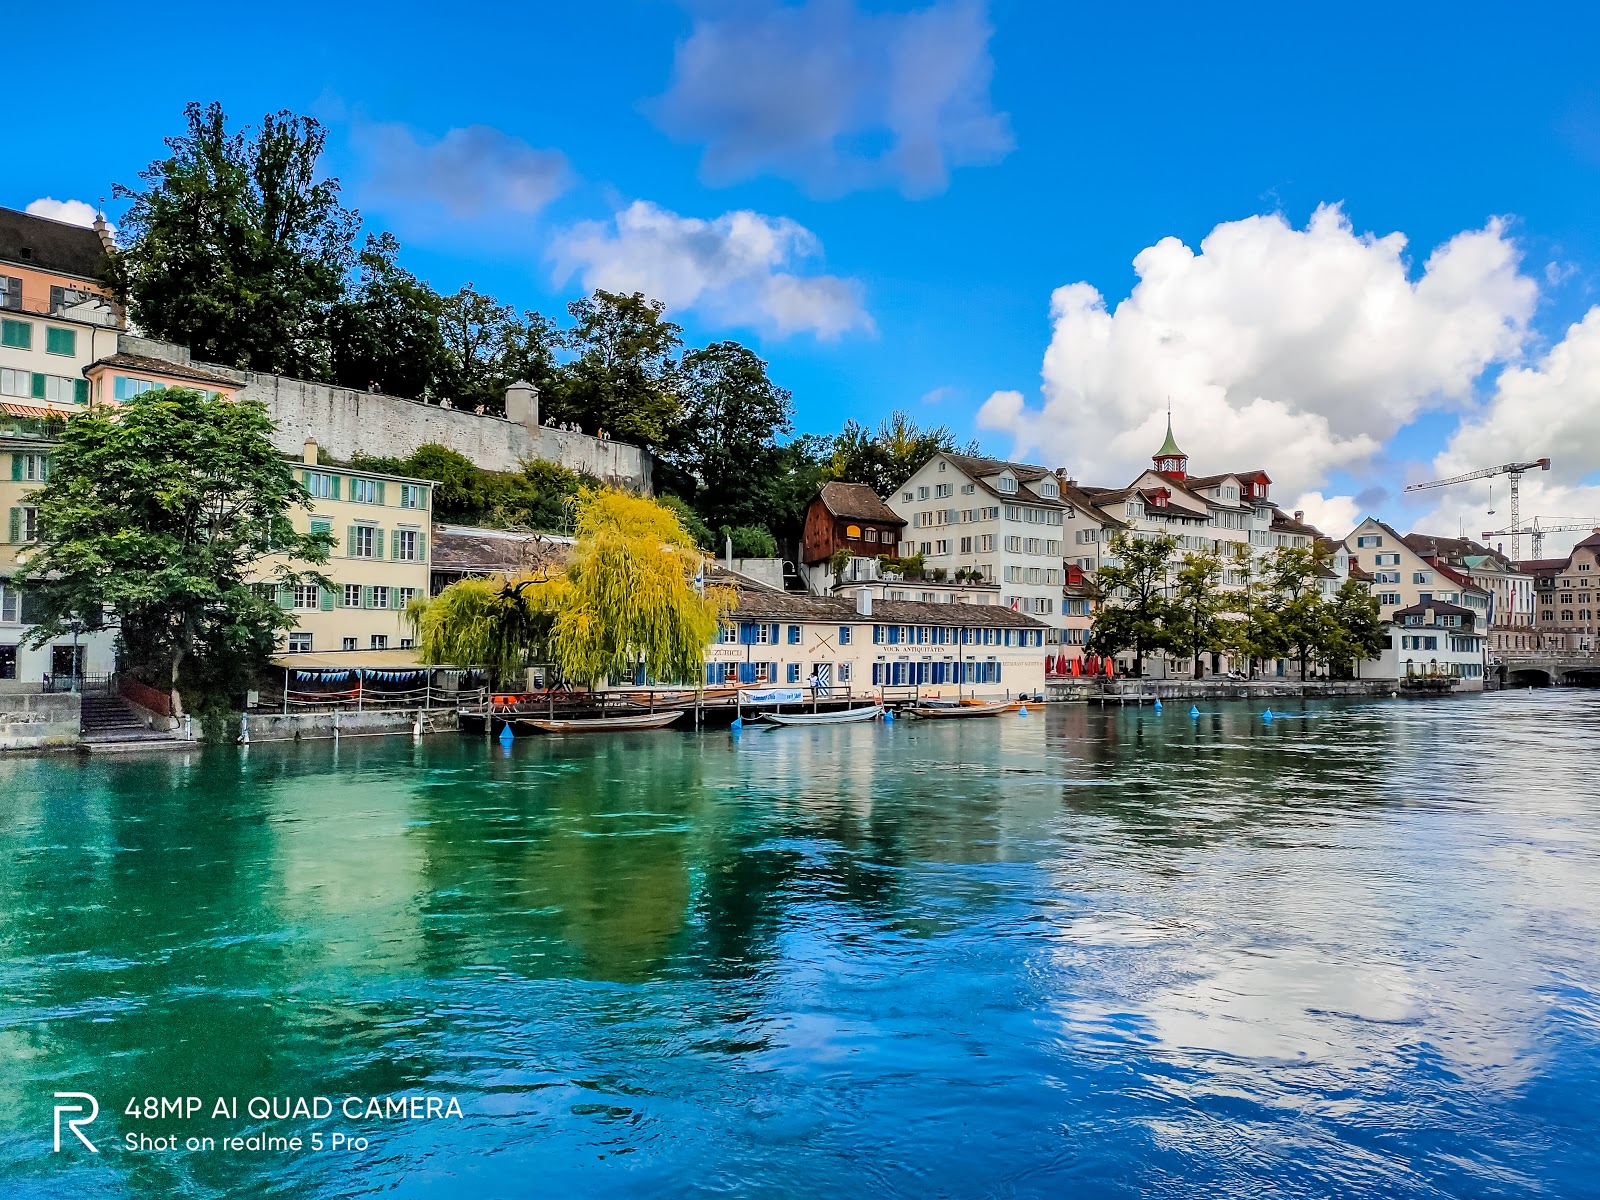 Zurich: Khám phá thành phố Zurich đầy sức sống và những điểm đến đáng chú ý nhất. Từ các trung tâm mua sắm đến những công viên và khu vực ăn uống, Zurich sẽ mang đến cho bạn những trải nghiệm tuyệt vời nhất của một thành phố châu Âu.